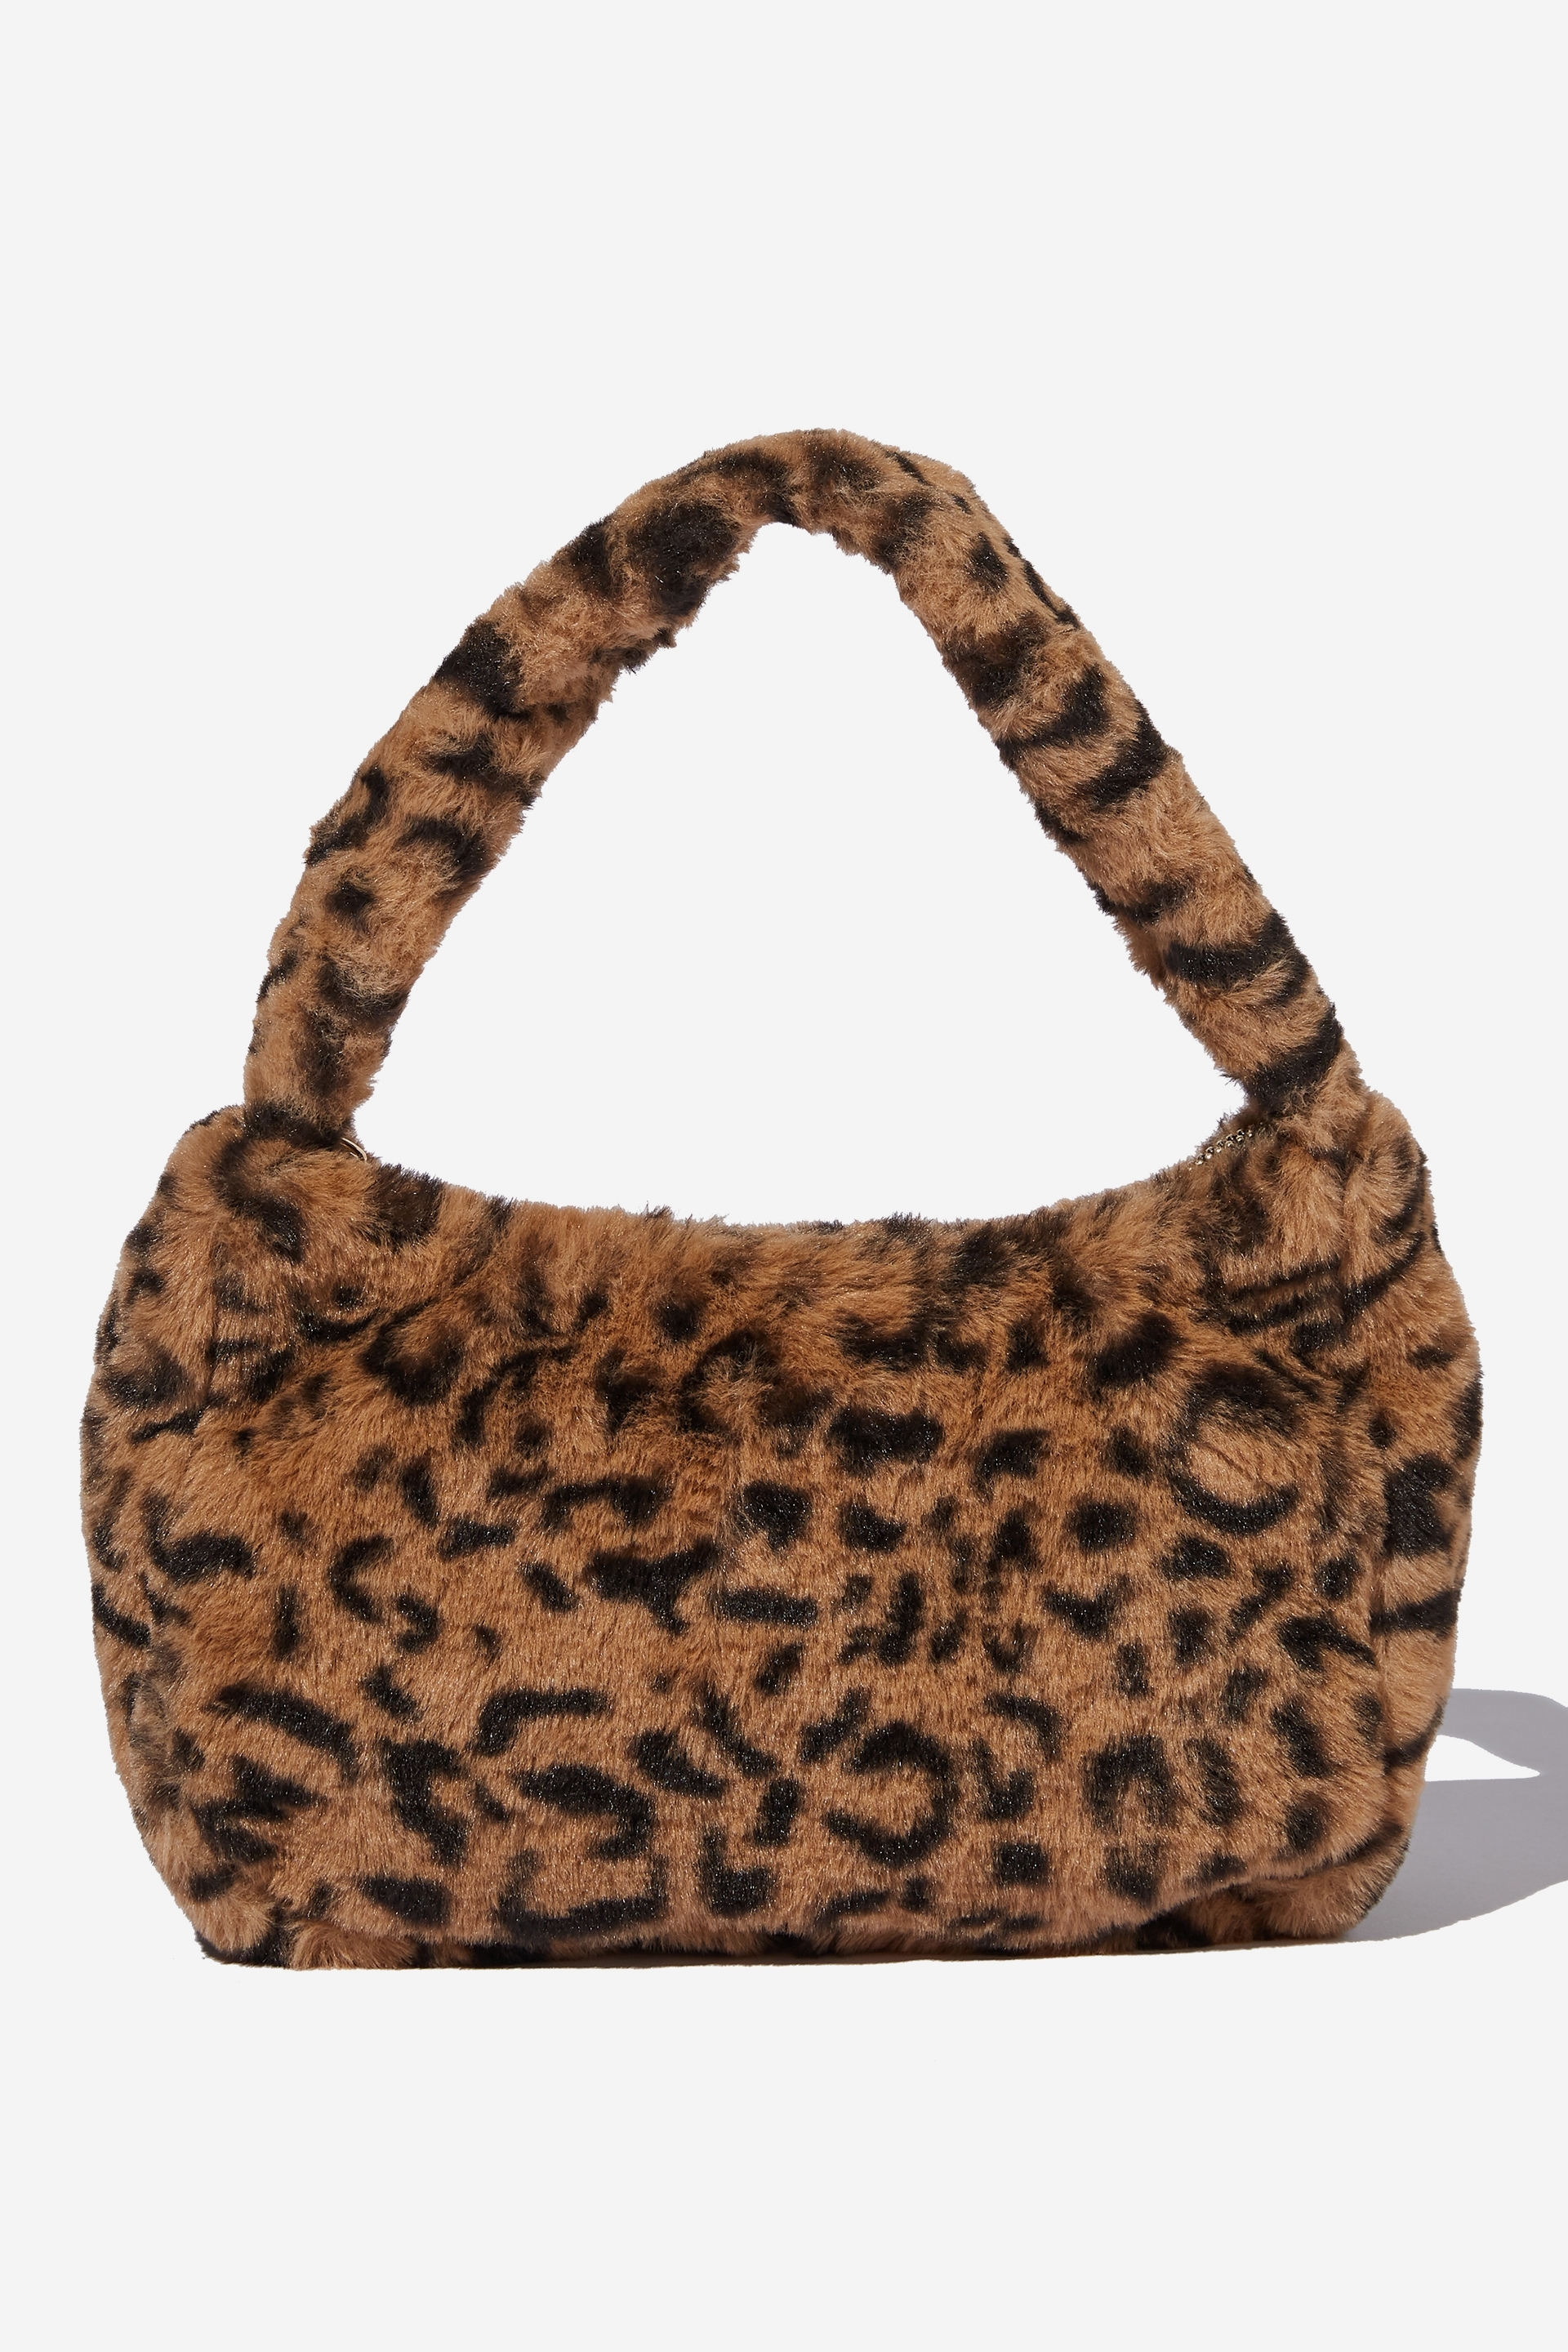 Supré - Lola Faux Fur Bag - Leopard